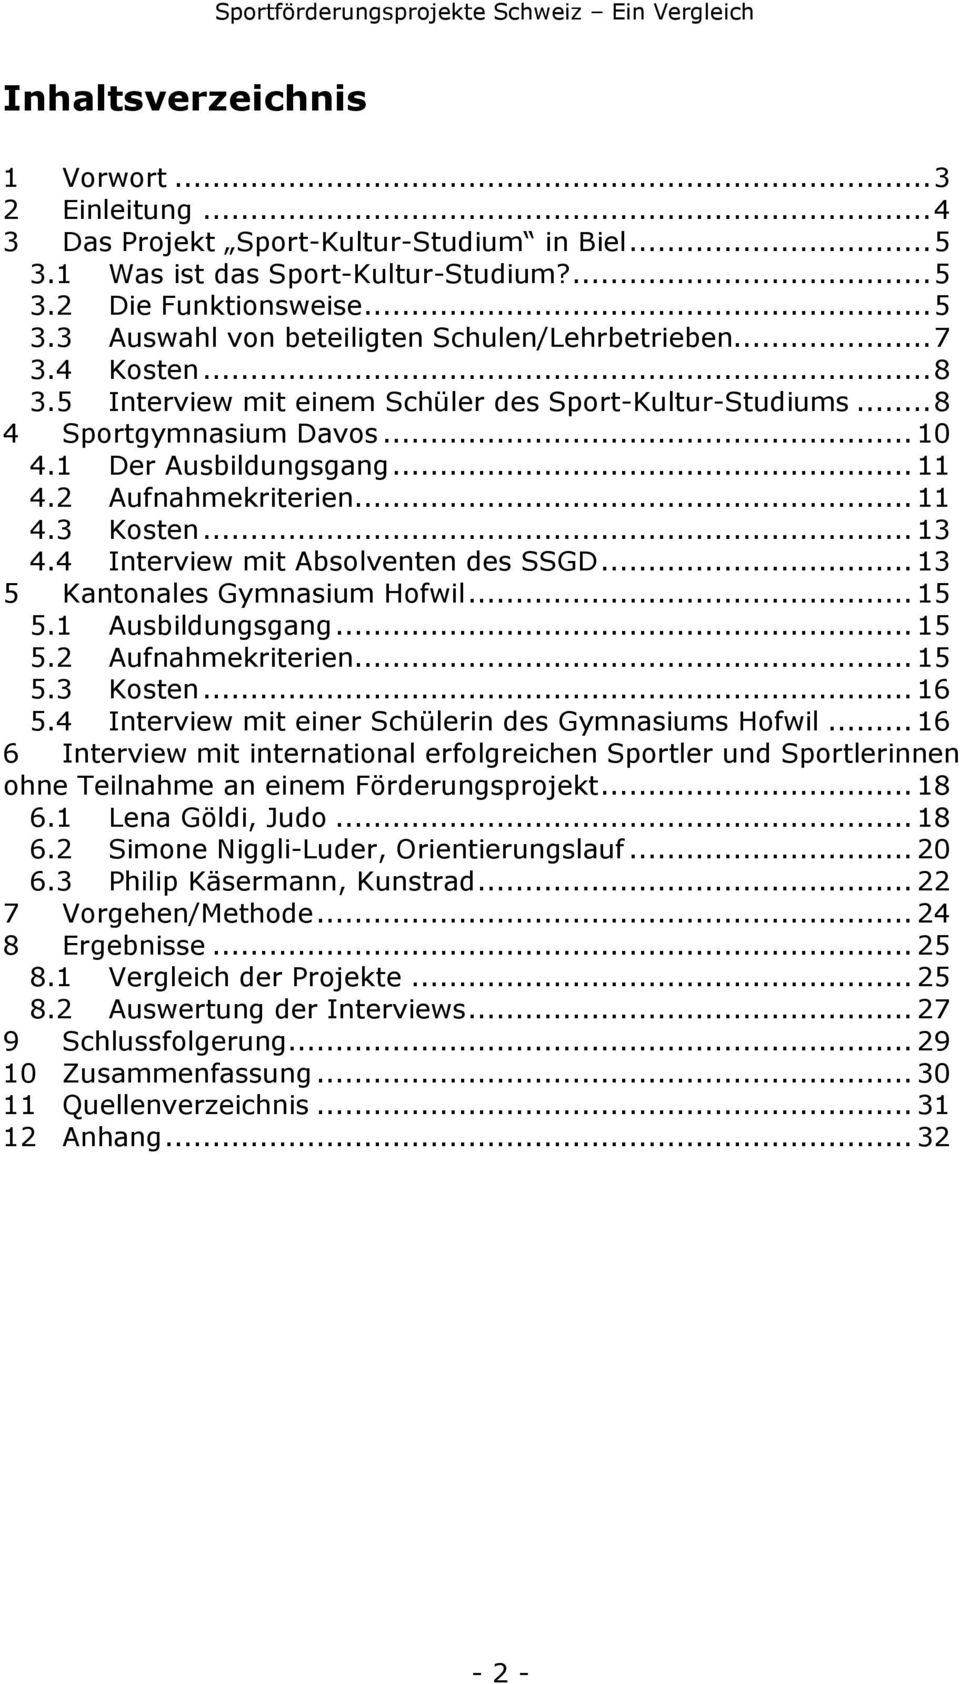 4 Interview mit Absolventen des SSGD...13 5 Kantonales Gymnasium Hofwil...15 5.1 Ausbildungsgang...15 5.2 Aufnahmekriterien...15 5.3 Kosten...16 5.